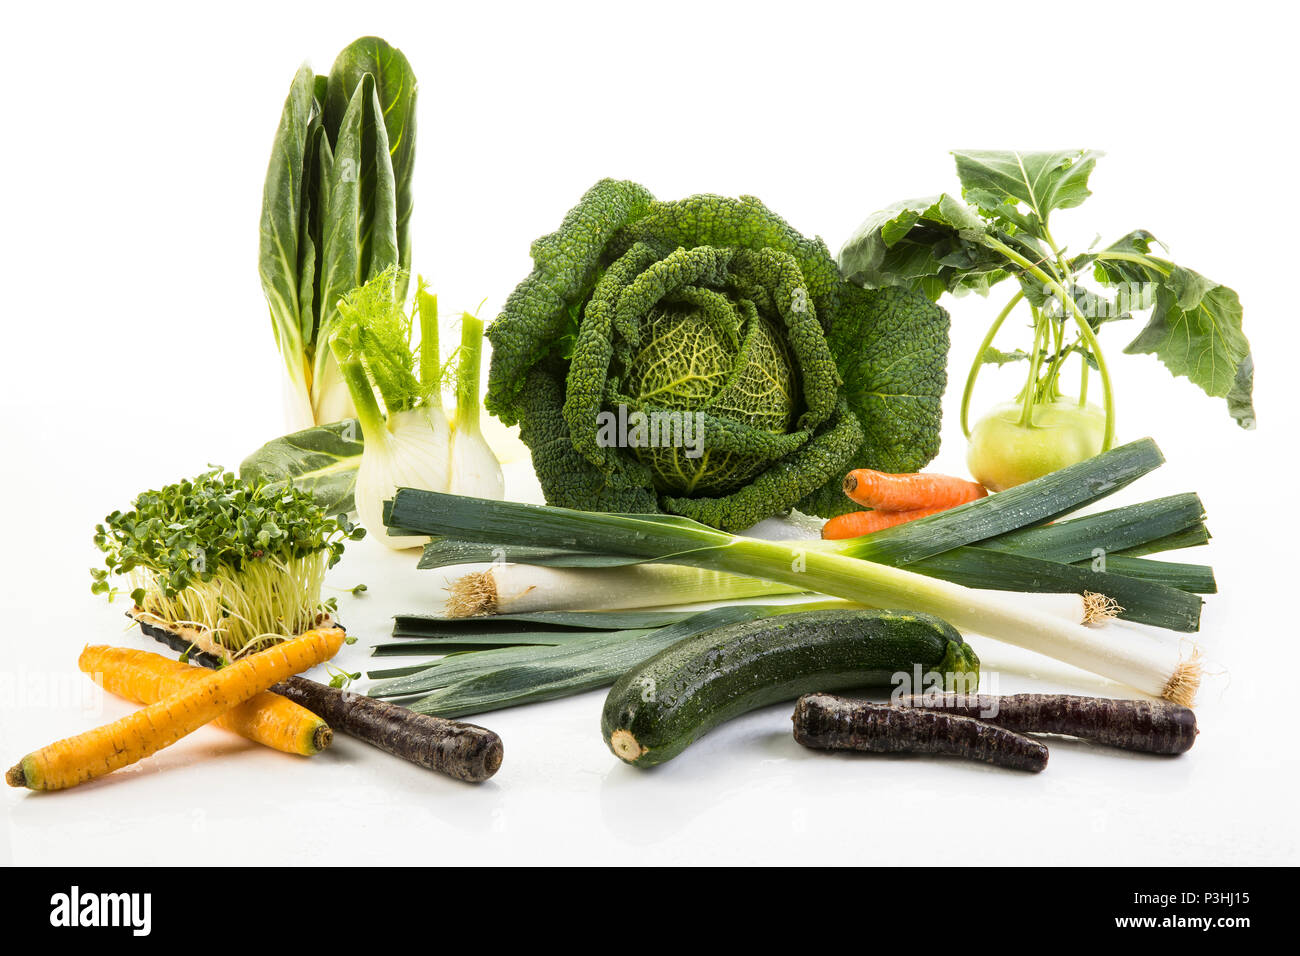 Gemüsemix, Wirsing, Kohlrabi, Fenchel, Karotten, Porree, Kresse, Lauch, Mangold und Zucchini auf weißem Hintergrund Stock Photo